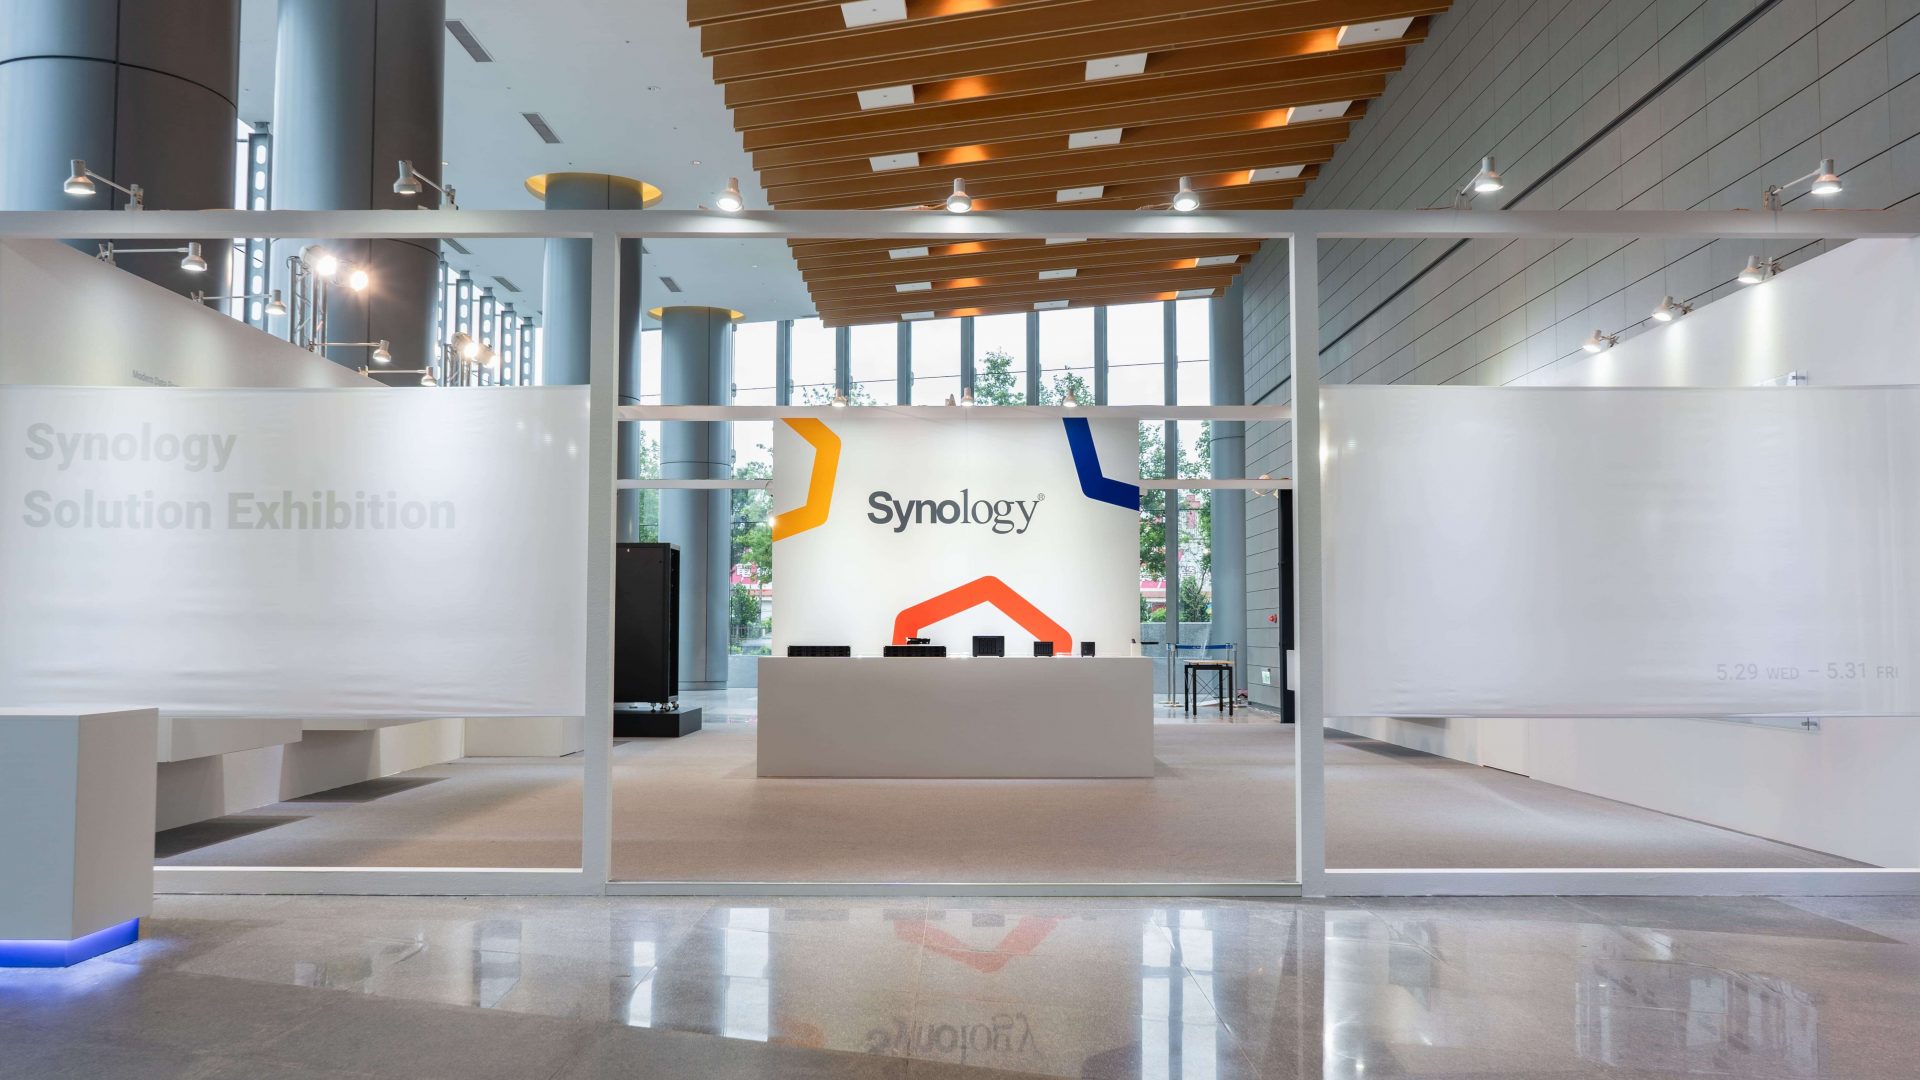 นิทรรศการ Synology® Solution Exhibition 2019 นำเสนอ โซลูชั่นการจัดการข้อมูลแบบครบวงจร